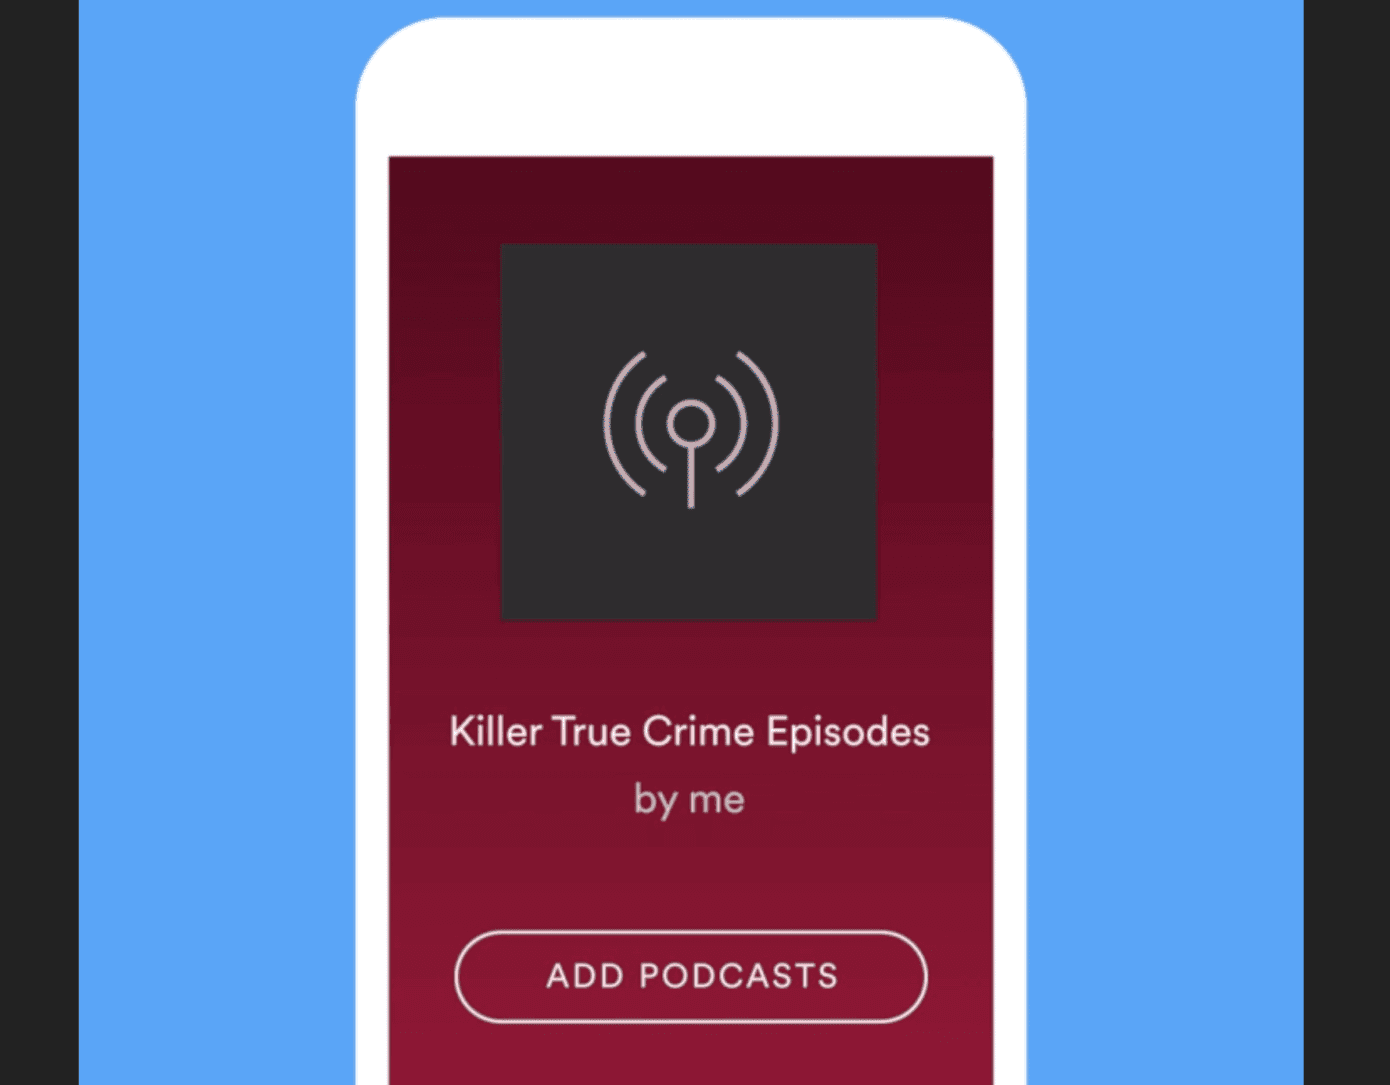 Vous pouvez désormais ajouter des podcasts aux playlists sur Spotify - Articles